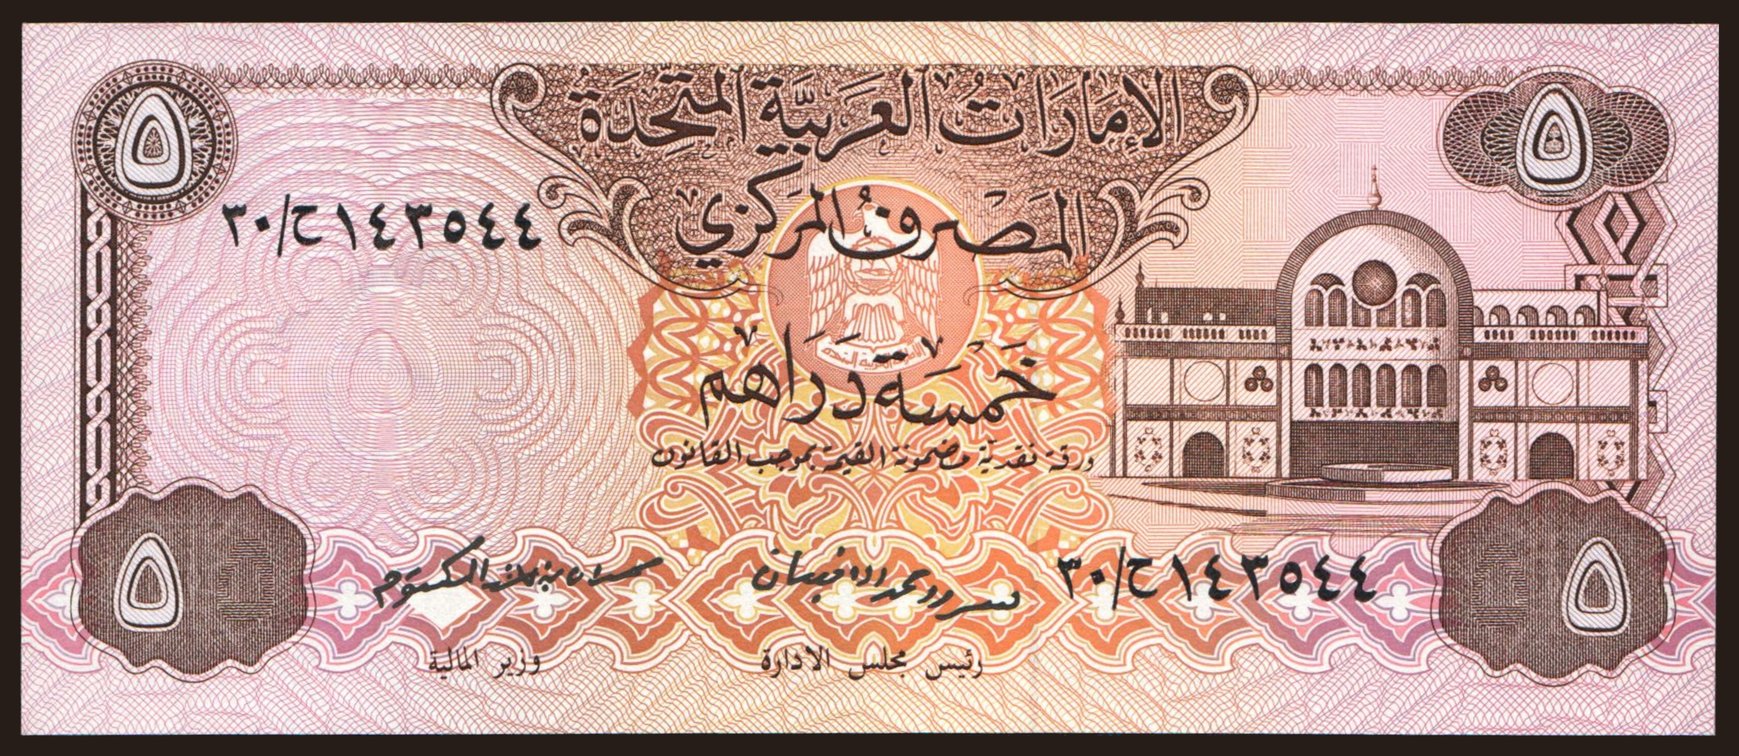 1000 дирхам это в рублях. Бумажные деньги арабских Эмиратов. Дирхам банкнота. Дирхам купюры бумажные. 10 Дирхам банкнота.